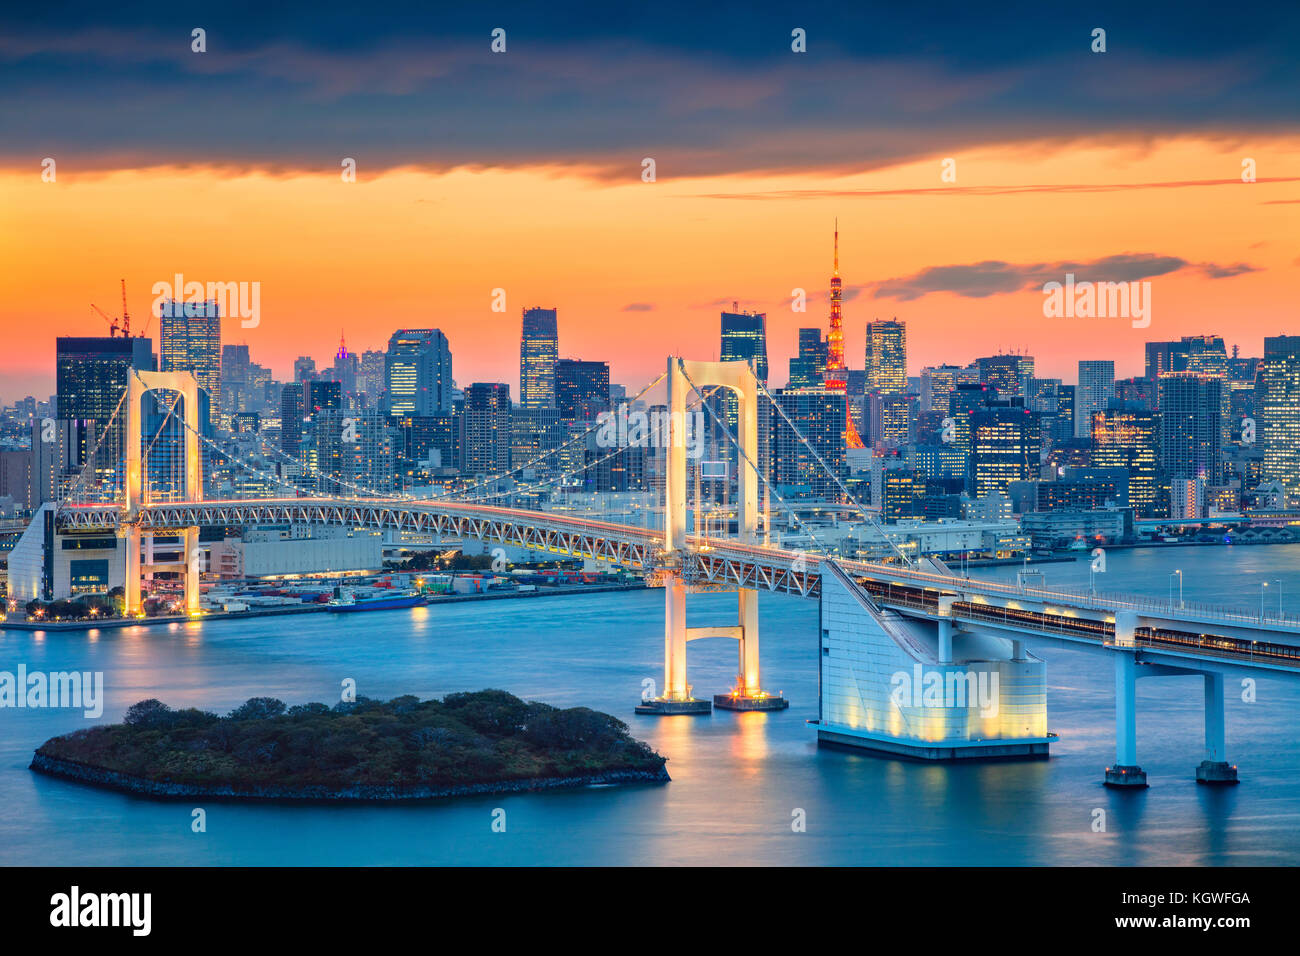 Tokio, Japón. Imagen del paisaje urbano de Tokio, Japón, con el puente Rainbow Bridge al atardecer. Foto de stock